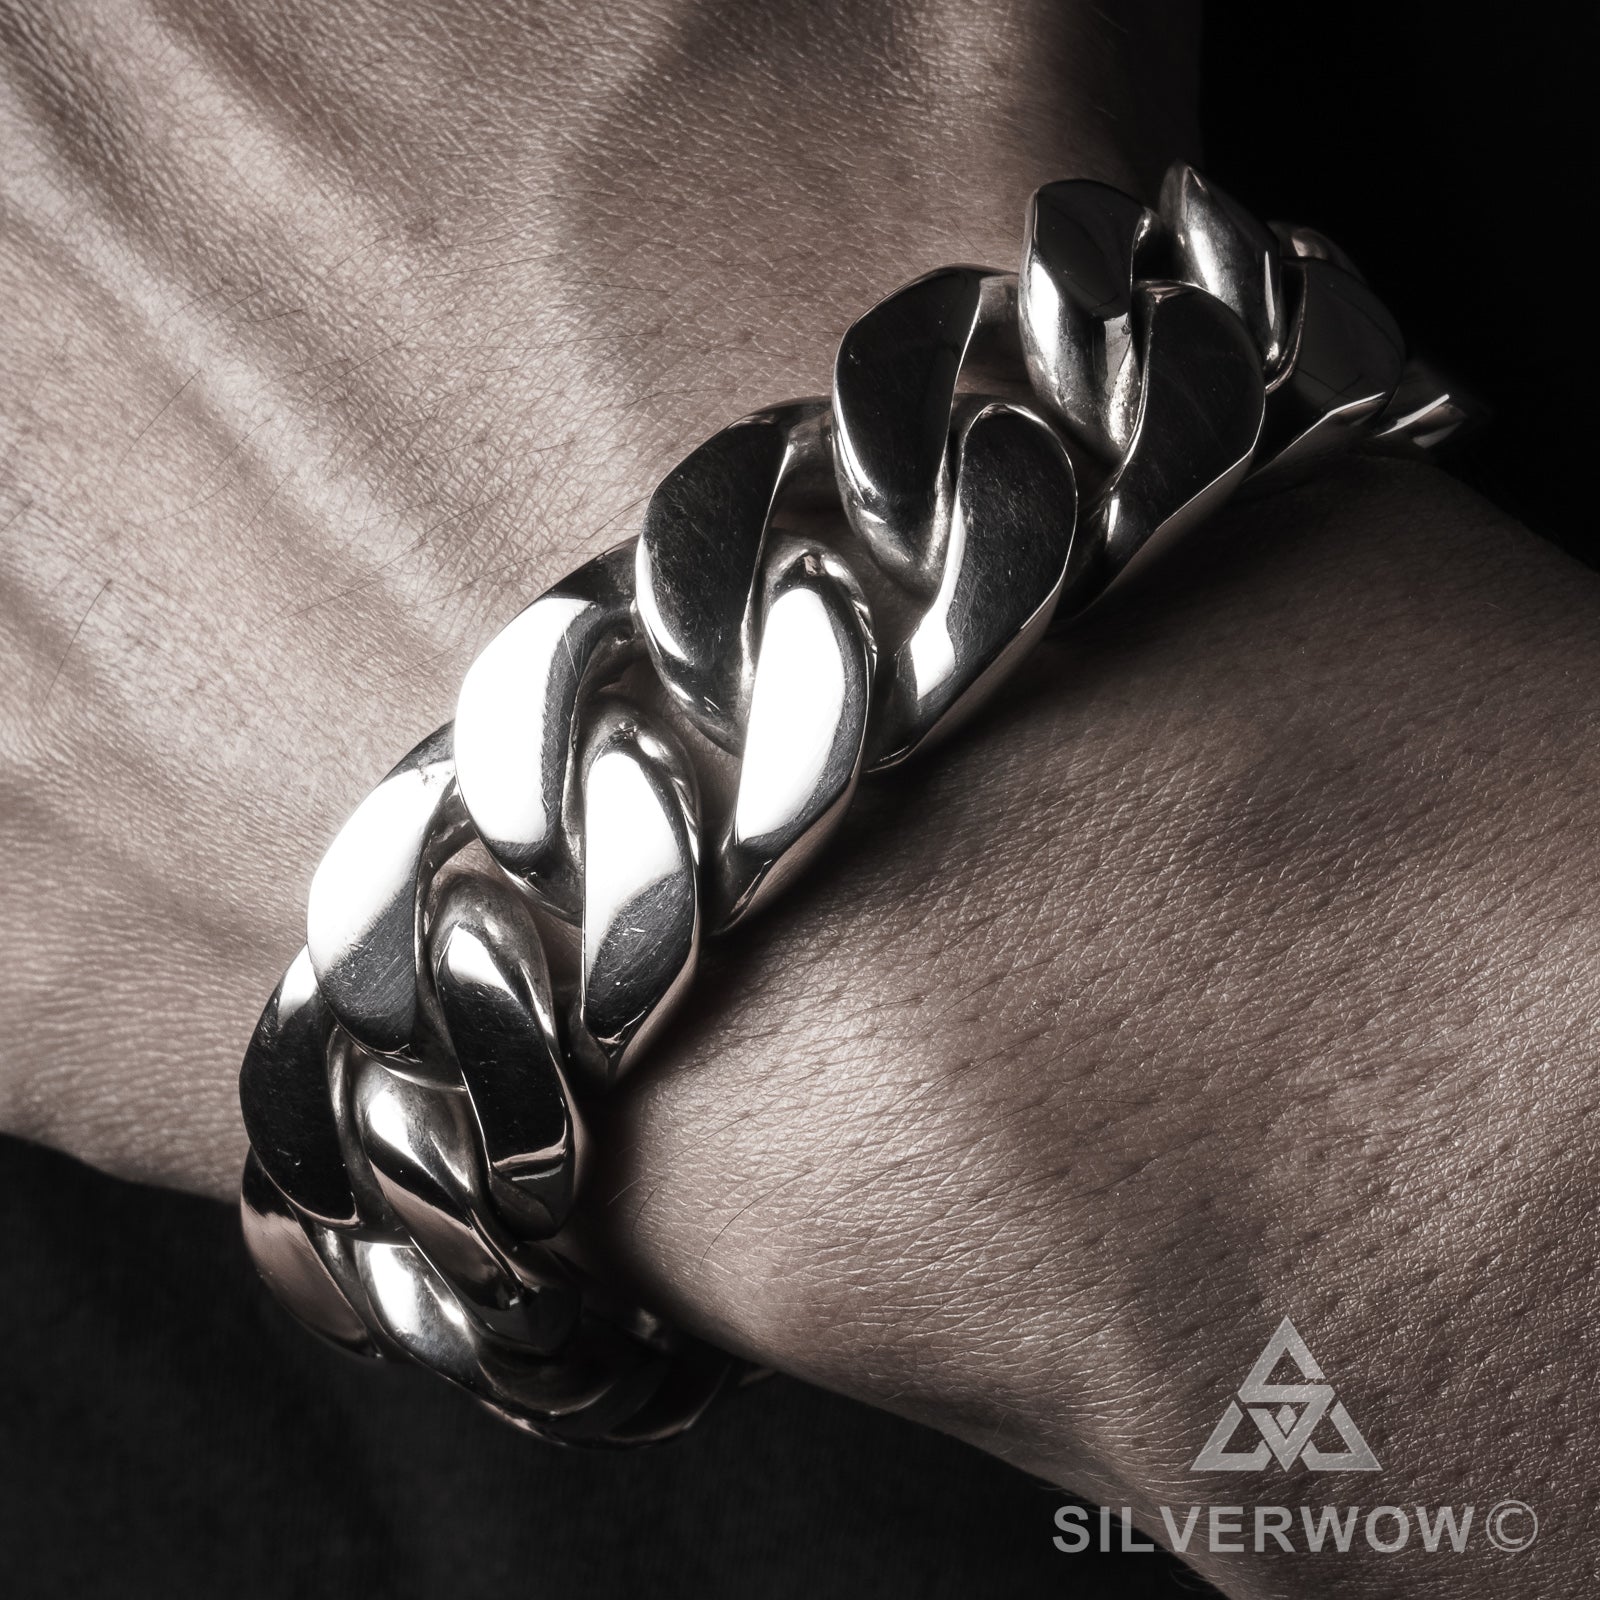 Silver Men Bracelet